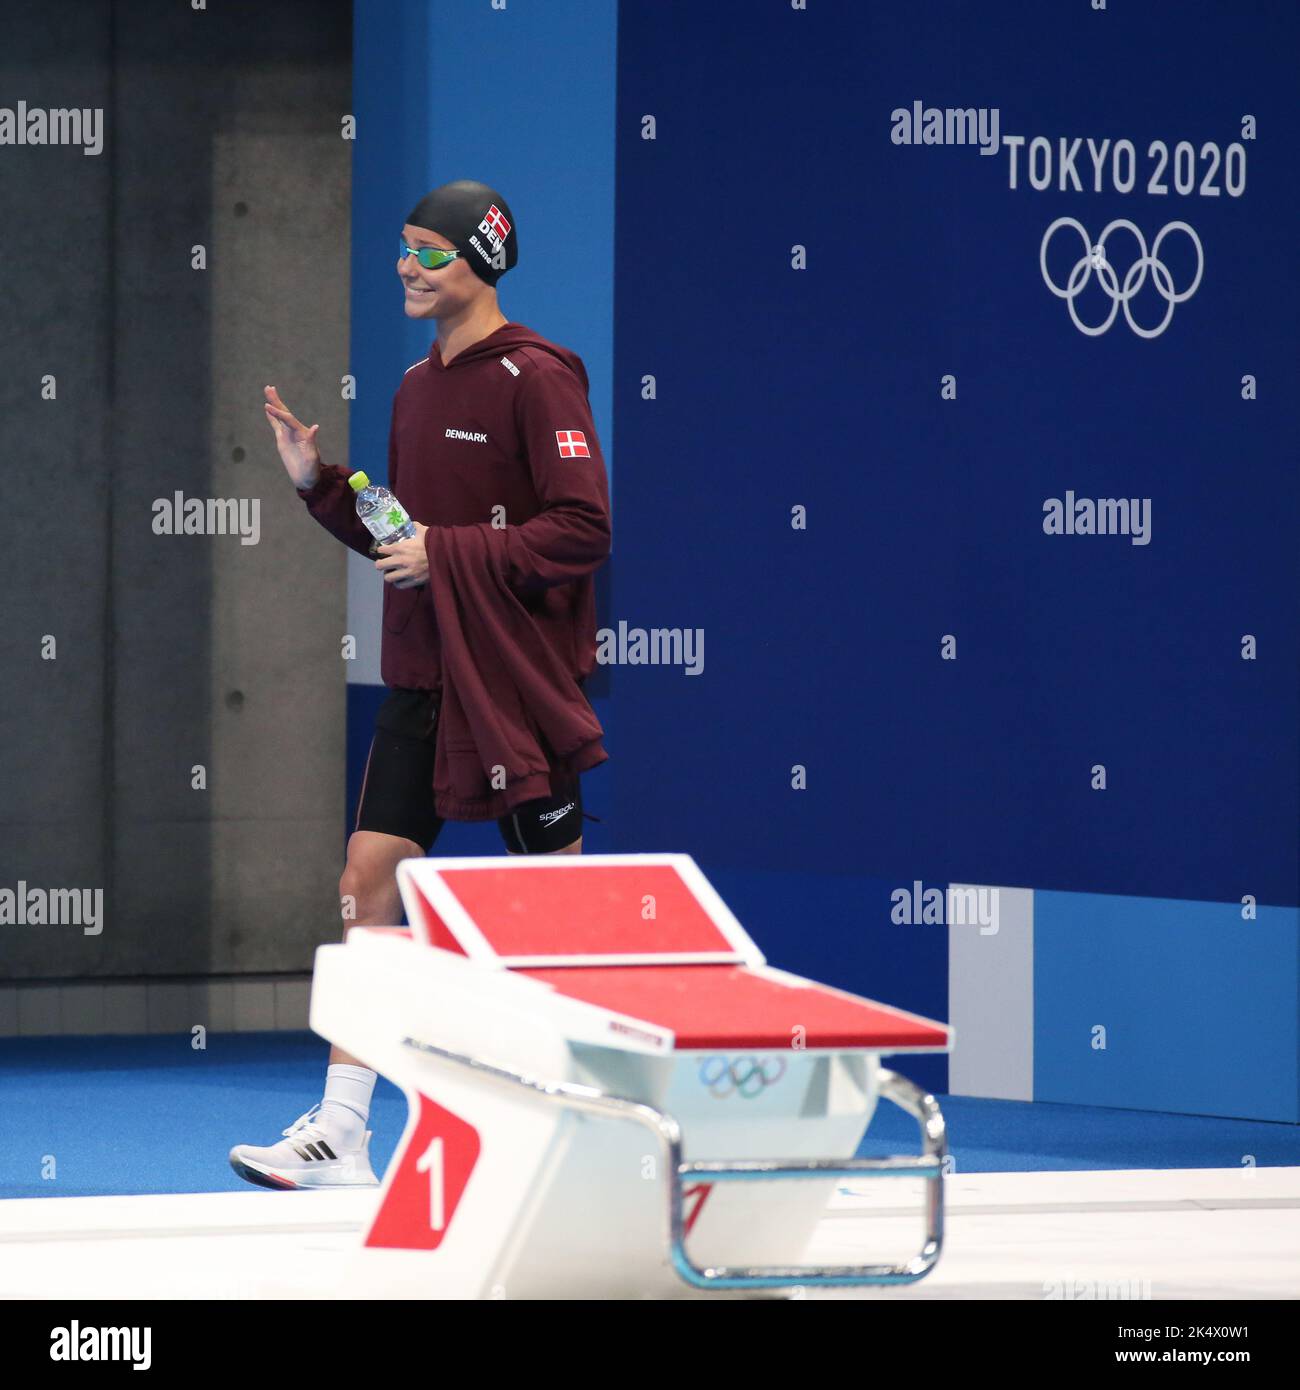 1st AGOSTO 2021 - TOKYO, GIAPPONE: Pernille BLUME di Danimarca in azione durante la finale di Freestyle 50m delle Donne in piscina ai Giochi Olimpici di Tokyo 2020 (Foto: Mickael Chavet/RX) Foto Stock